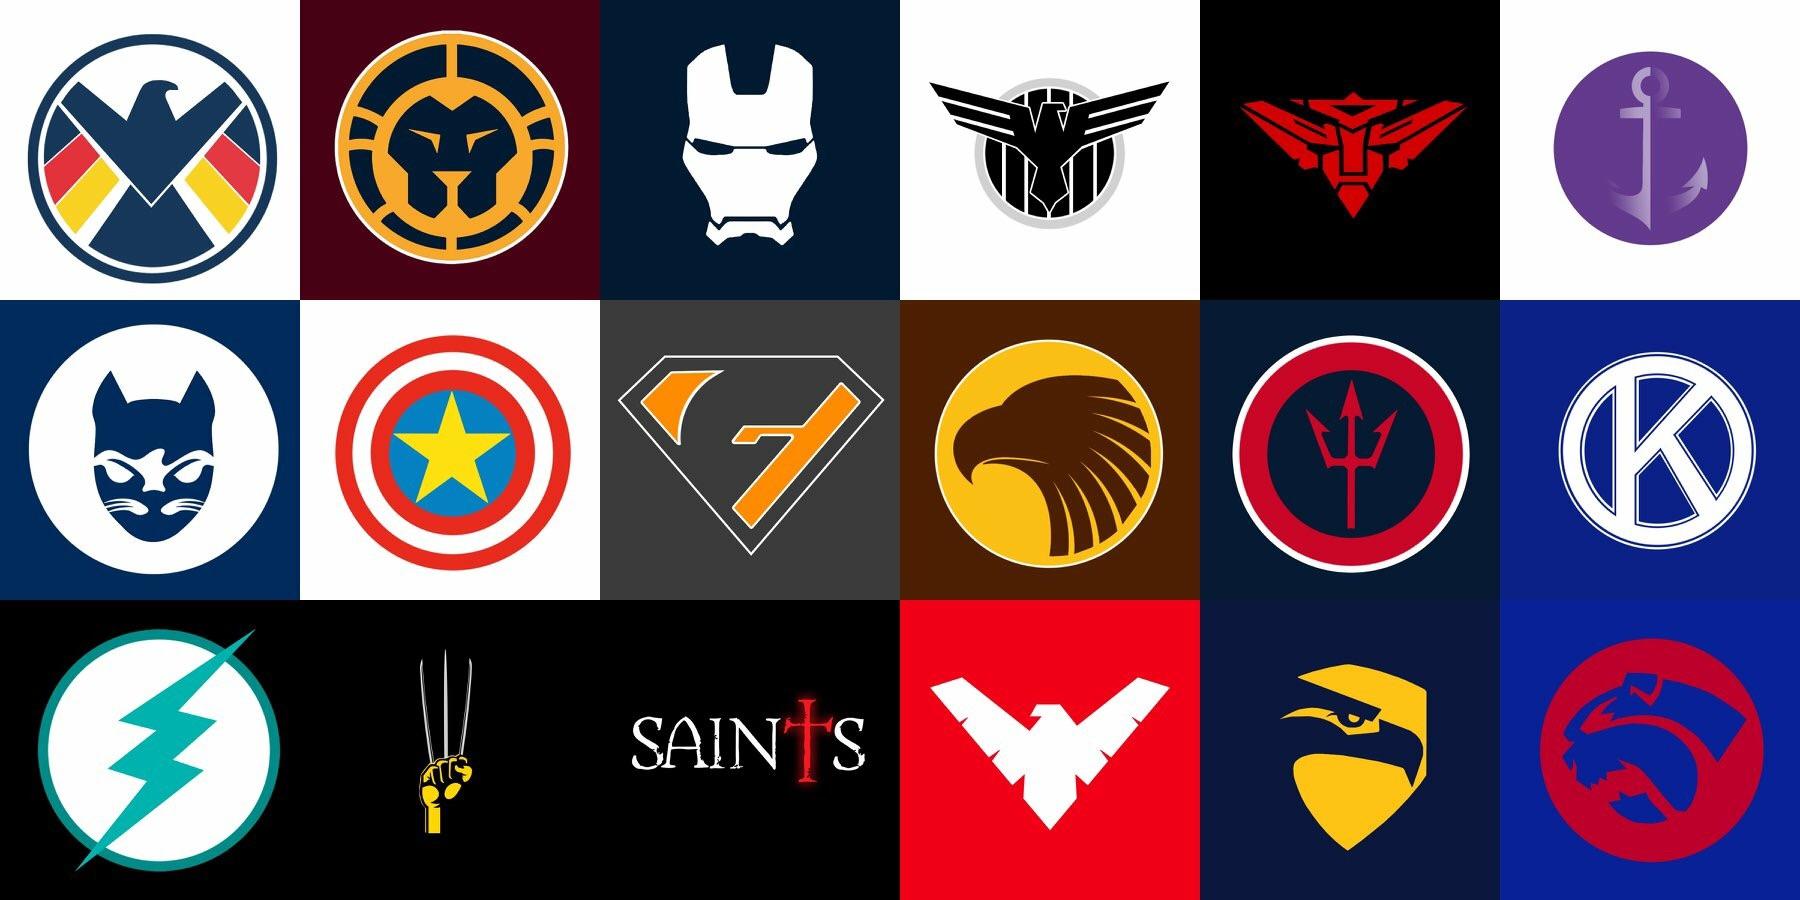 Every Superhero Logo - Every AFL team as a superhero logo. : AFL